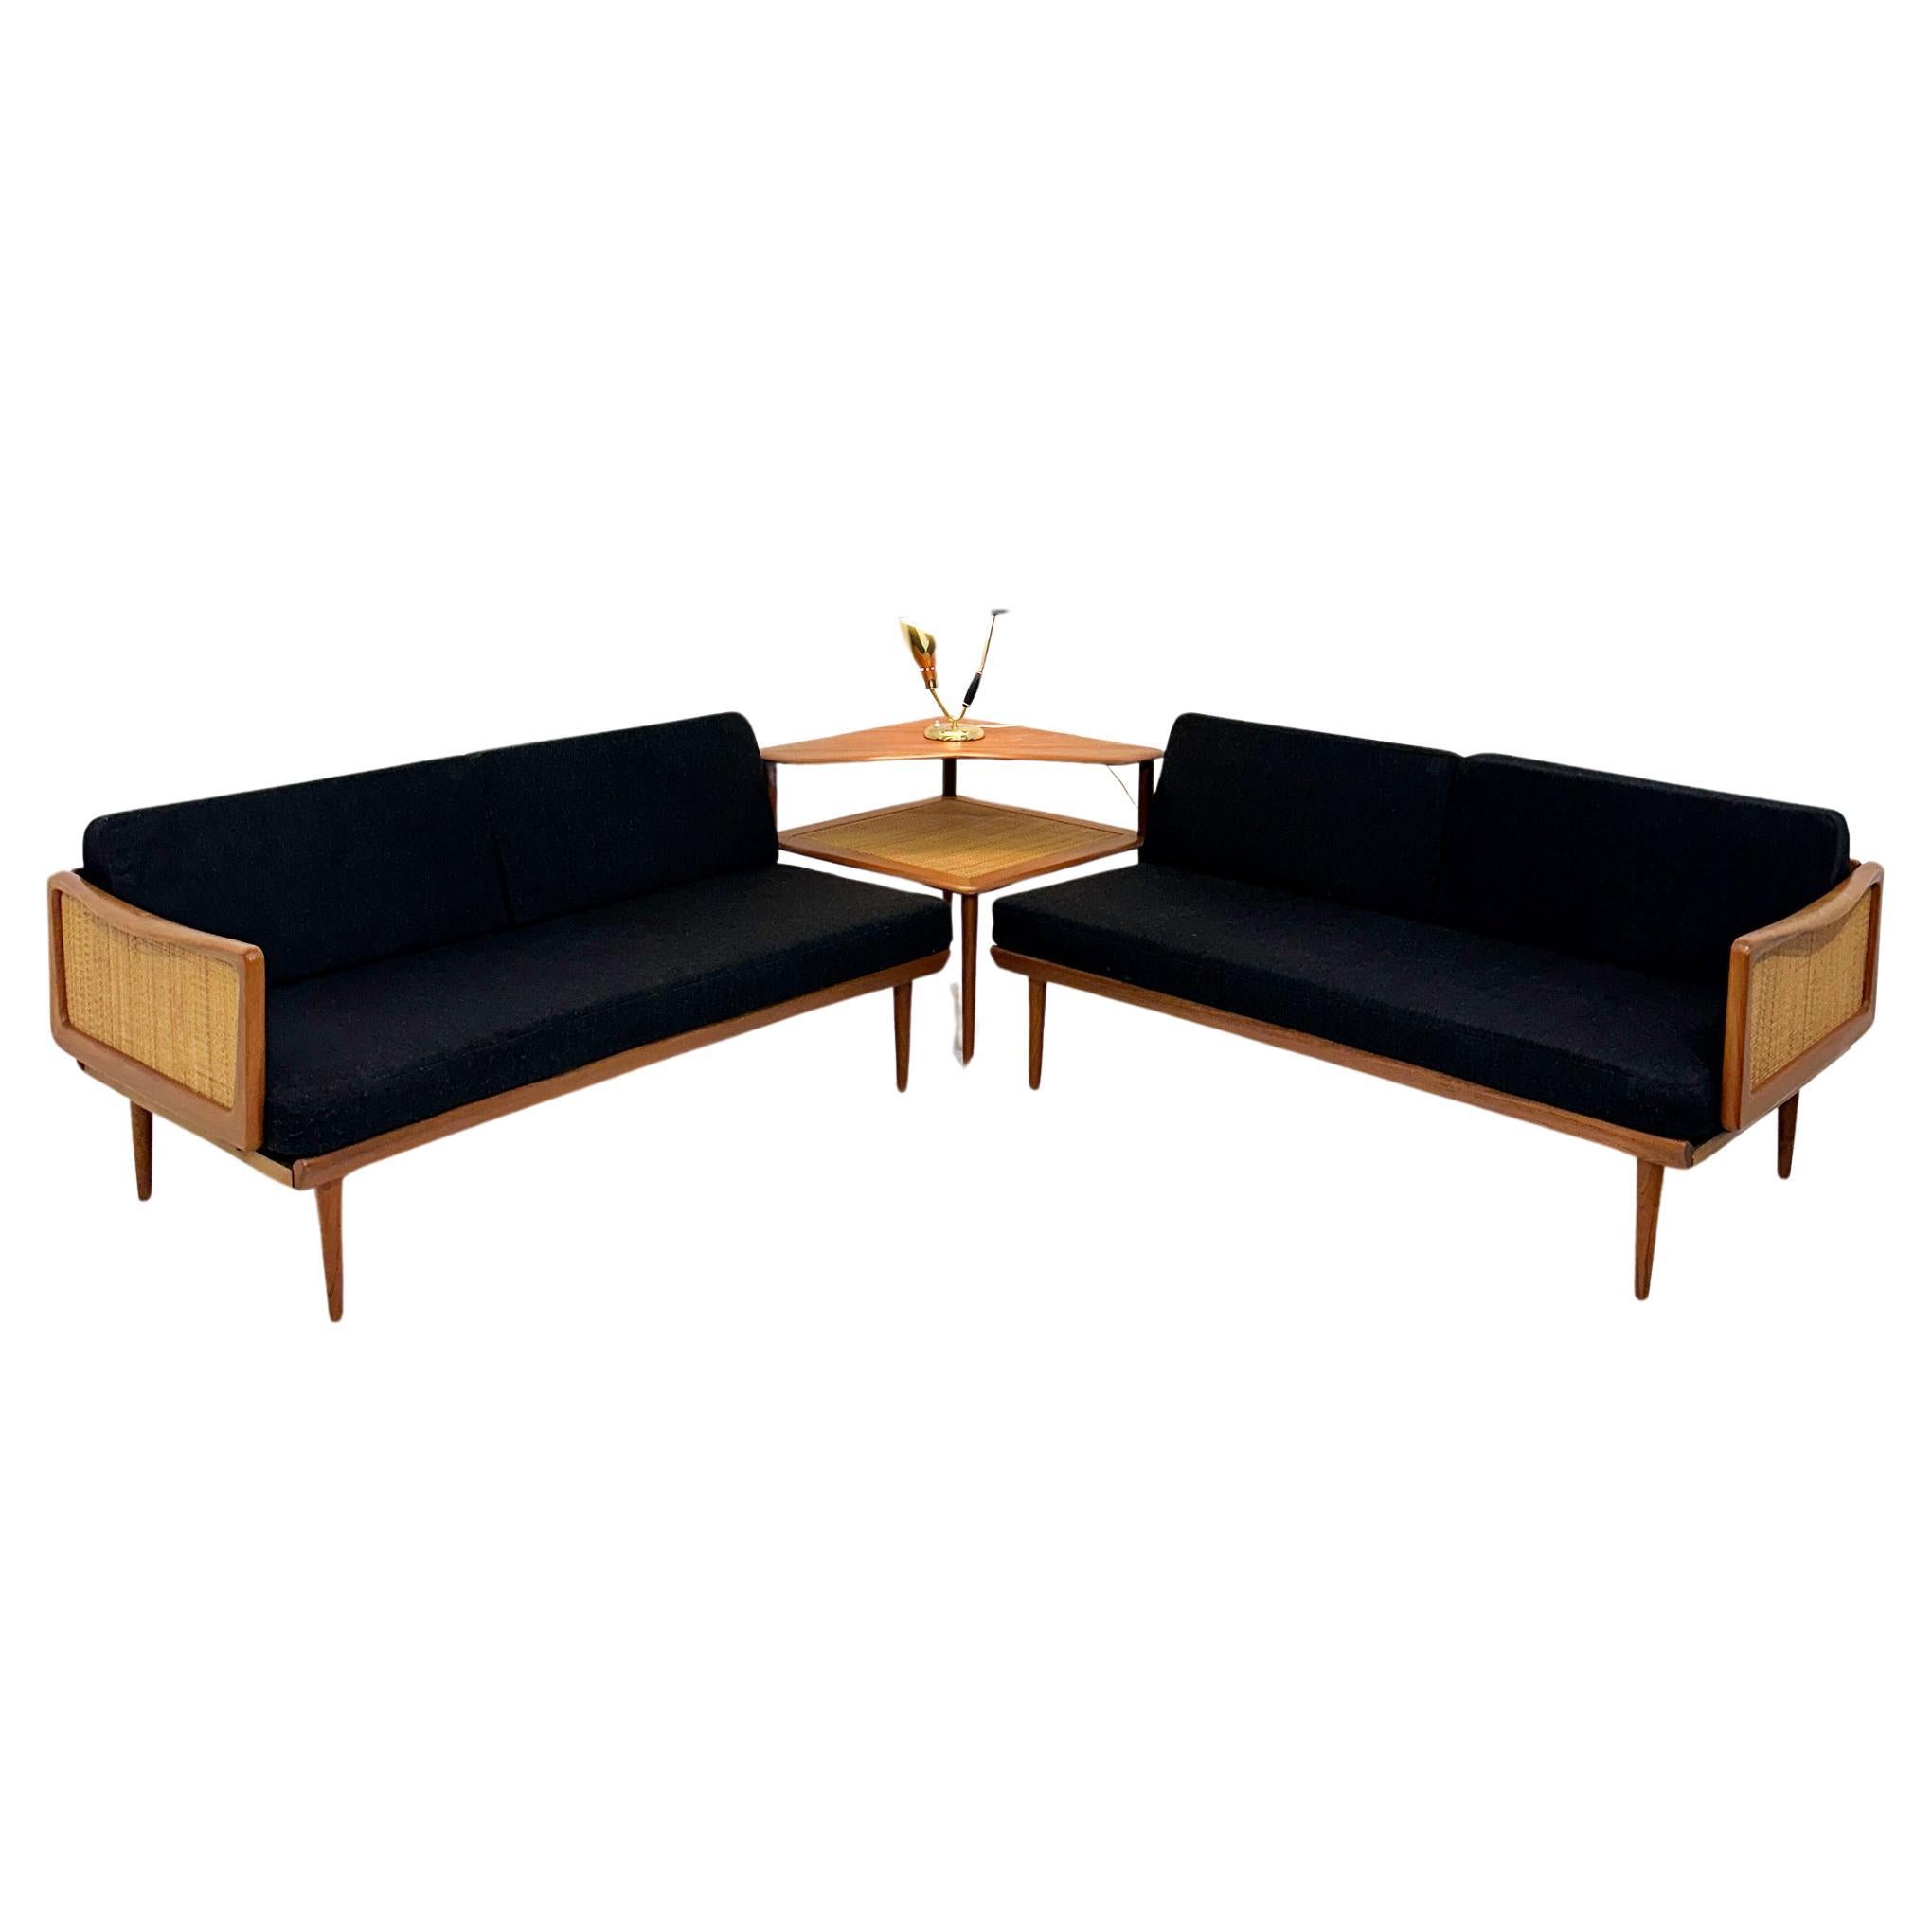 Peter Hvidt & Orla Mølgaard-Nielsen set of corner sofas model FD451